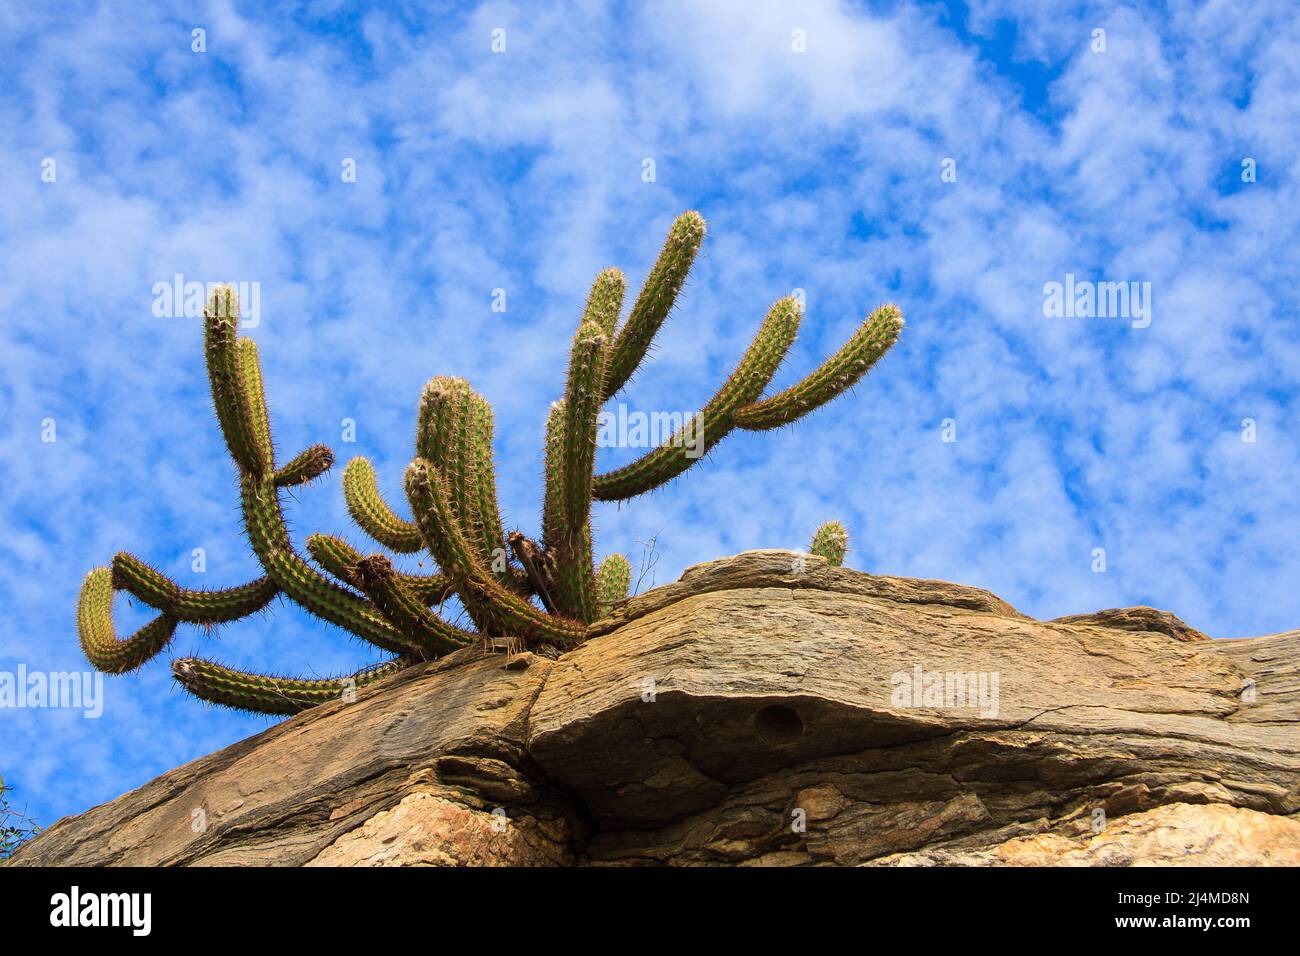 cactus xique-xique su pietra a caatinga, tipica vegetazione semi-arida del nord-est brasiliano Foto Stock